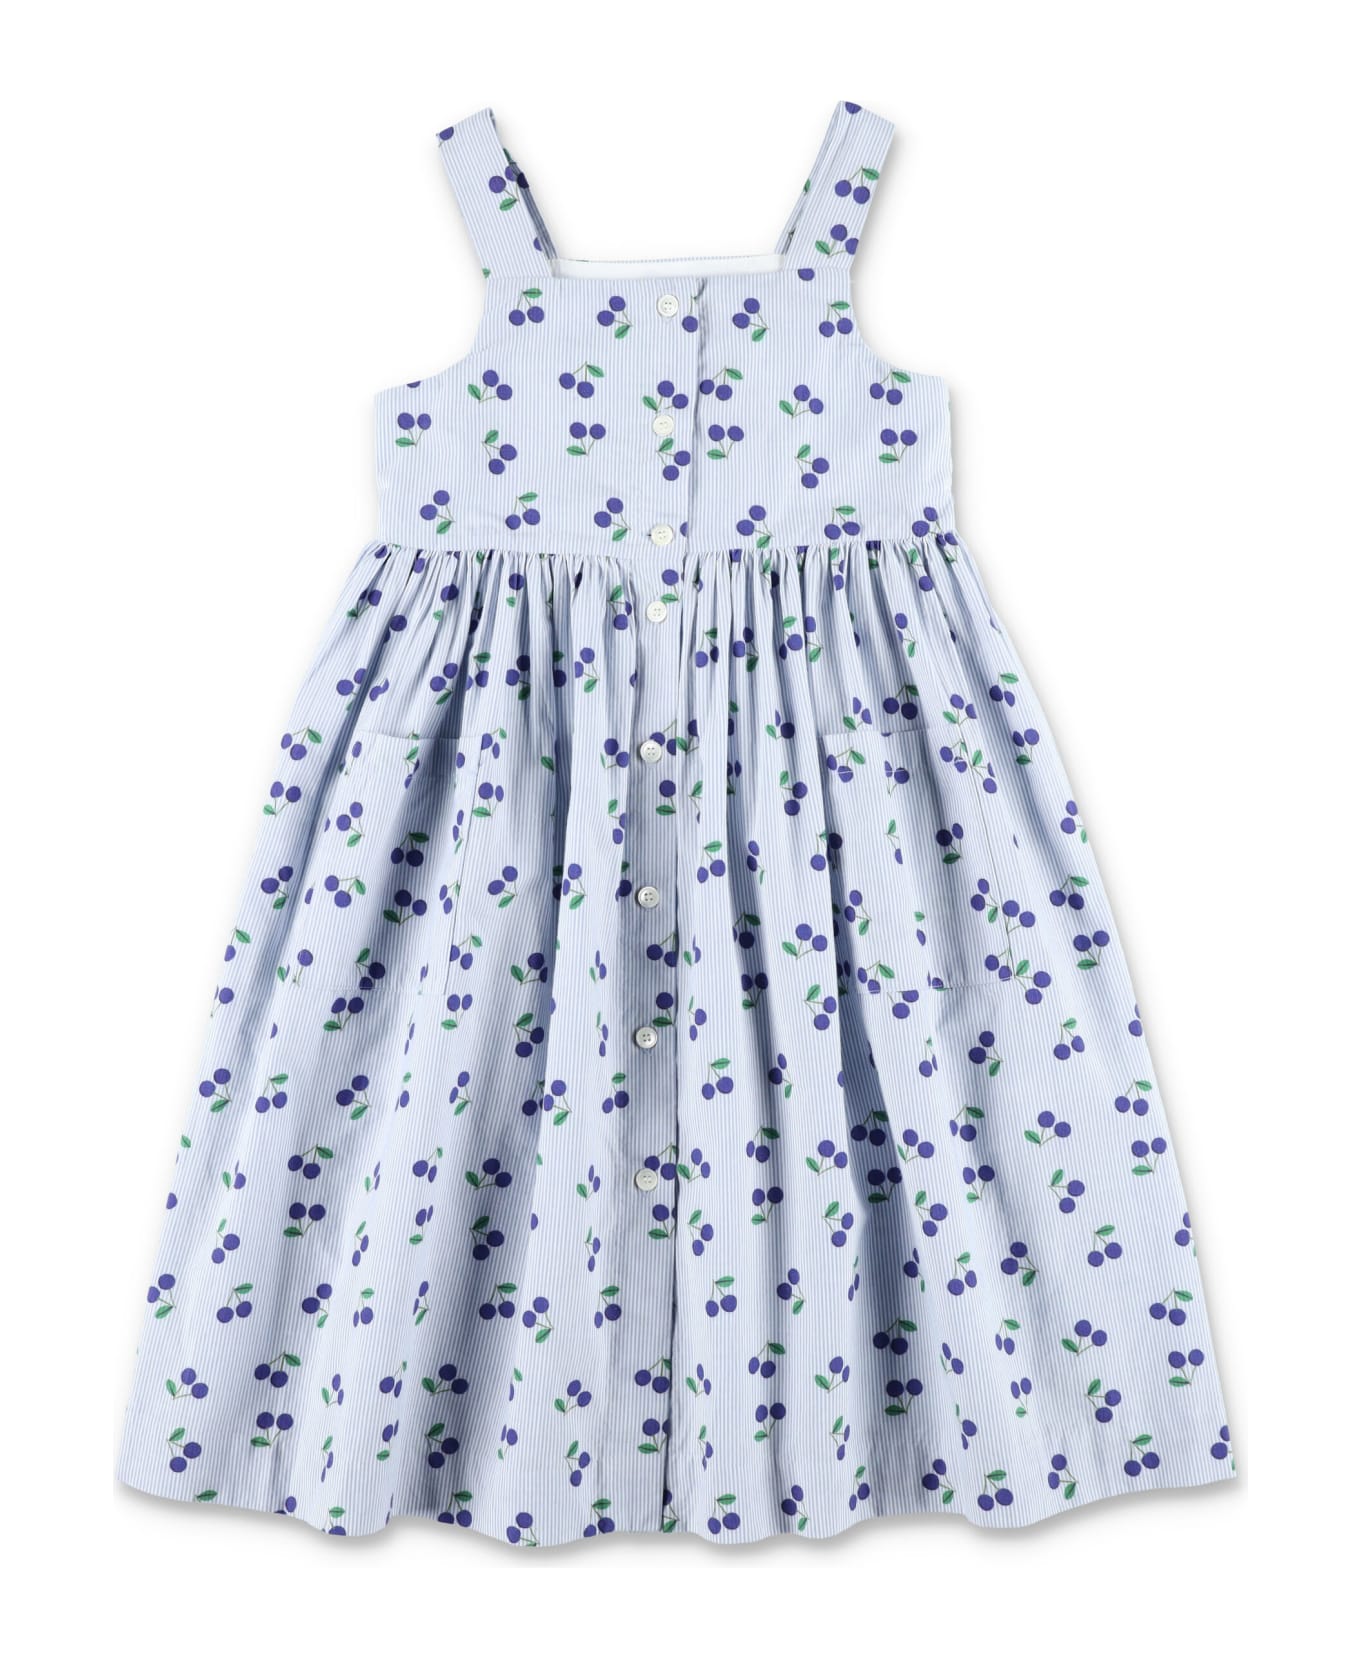 Bonpoint Laly Dress - SKY BLUE